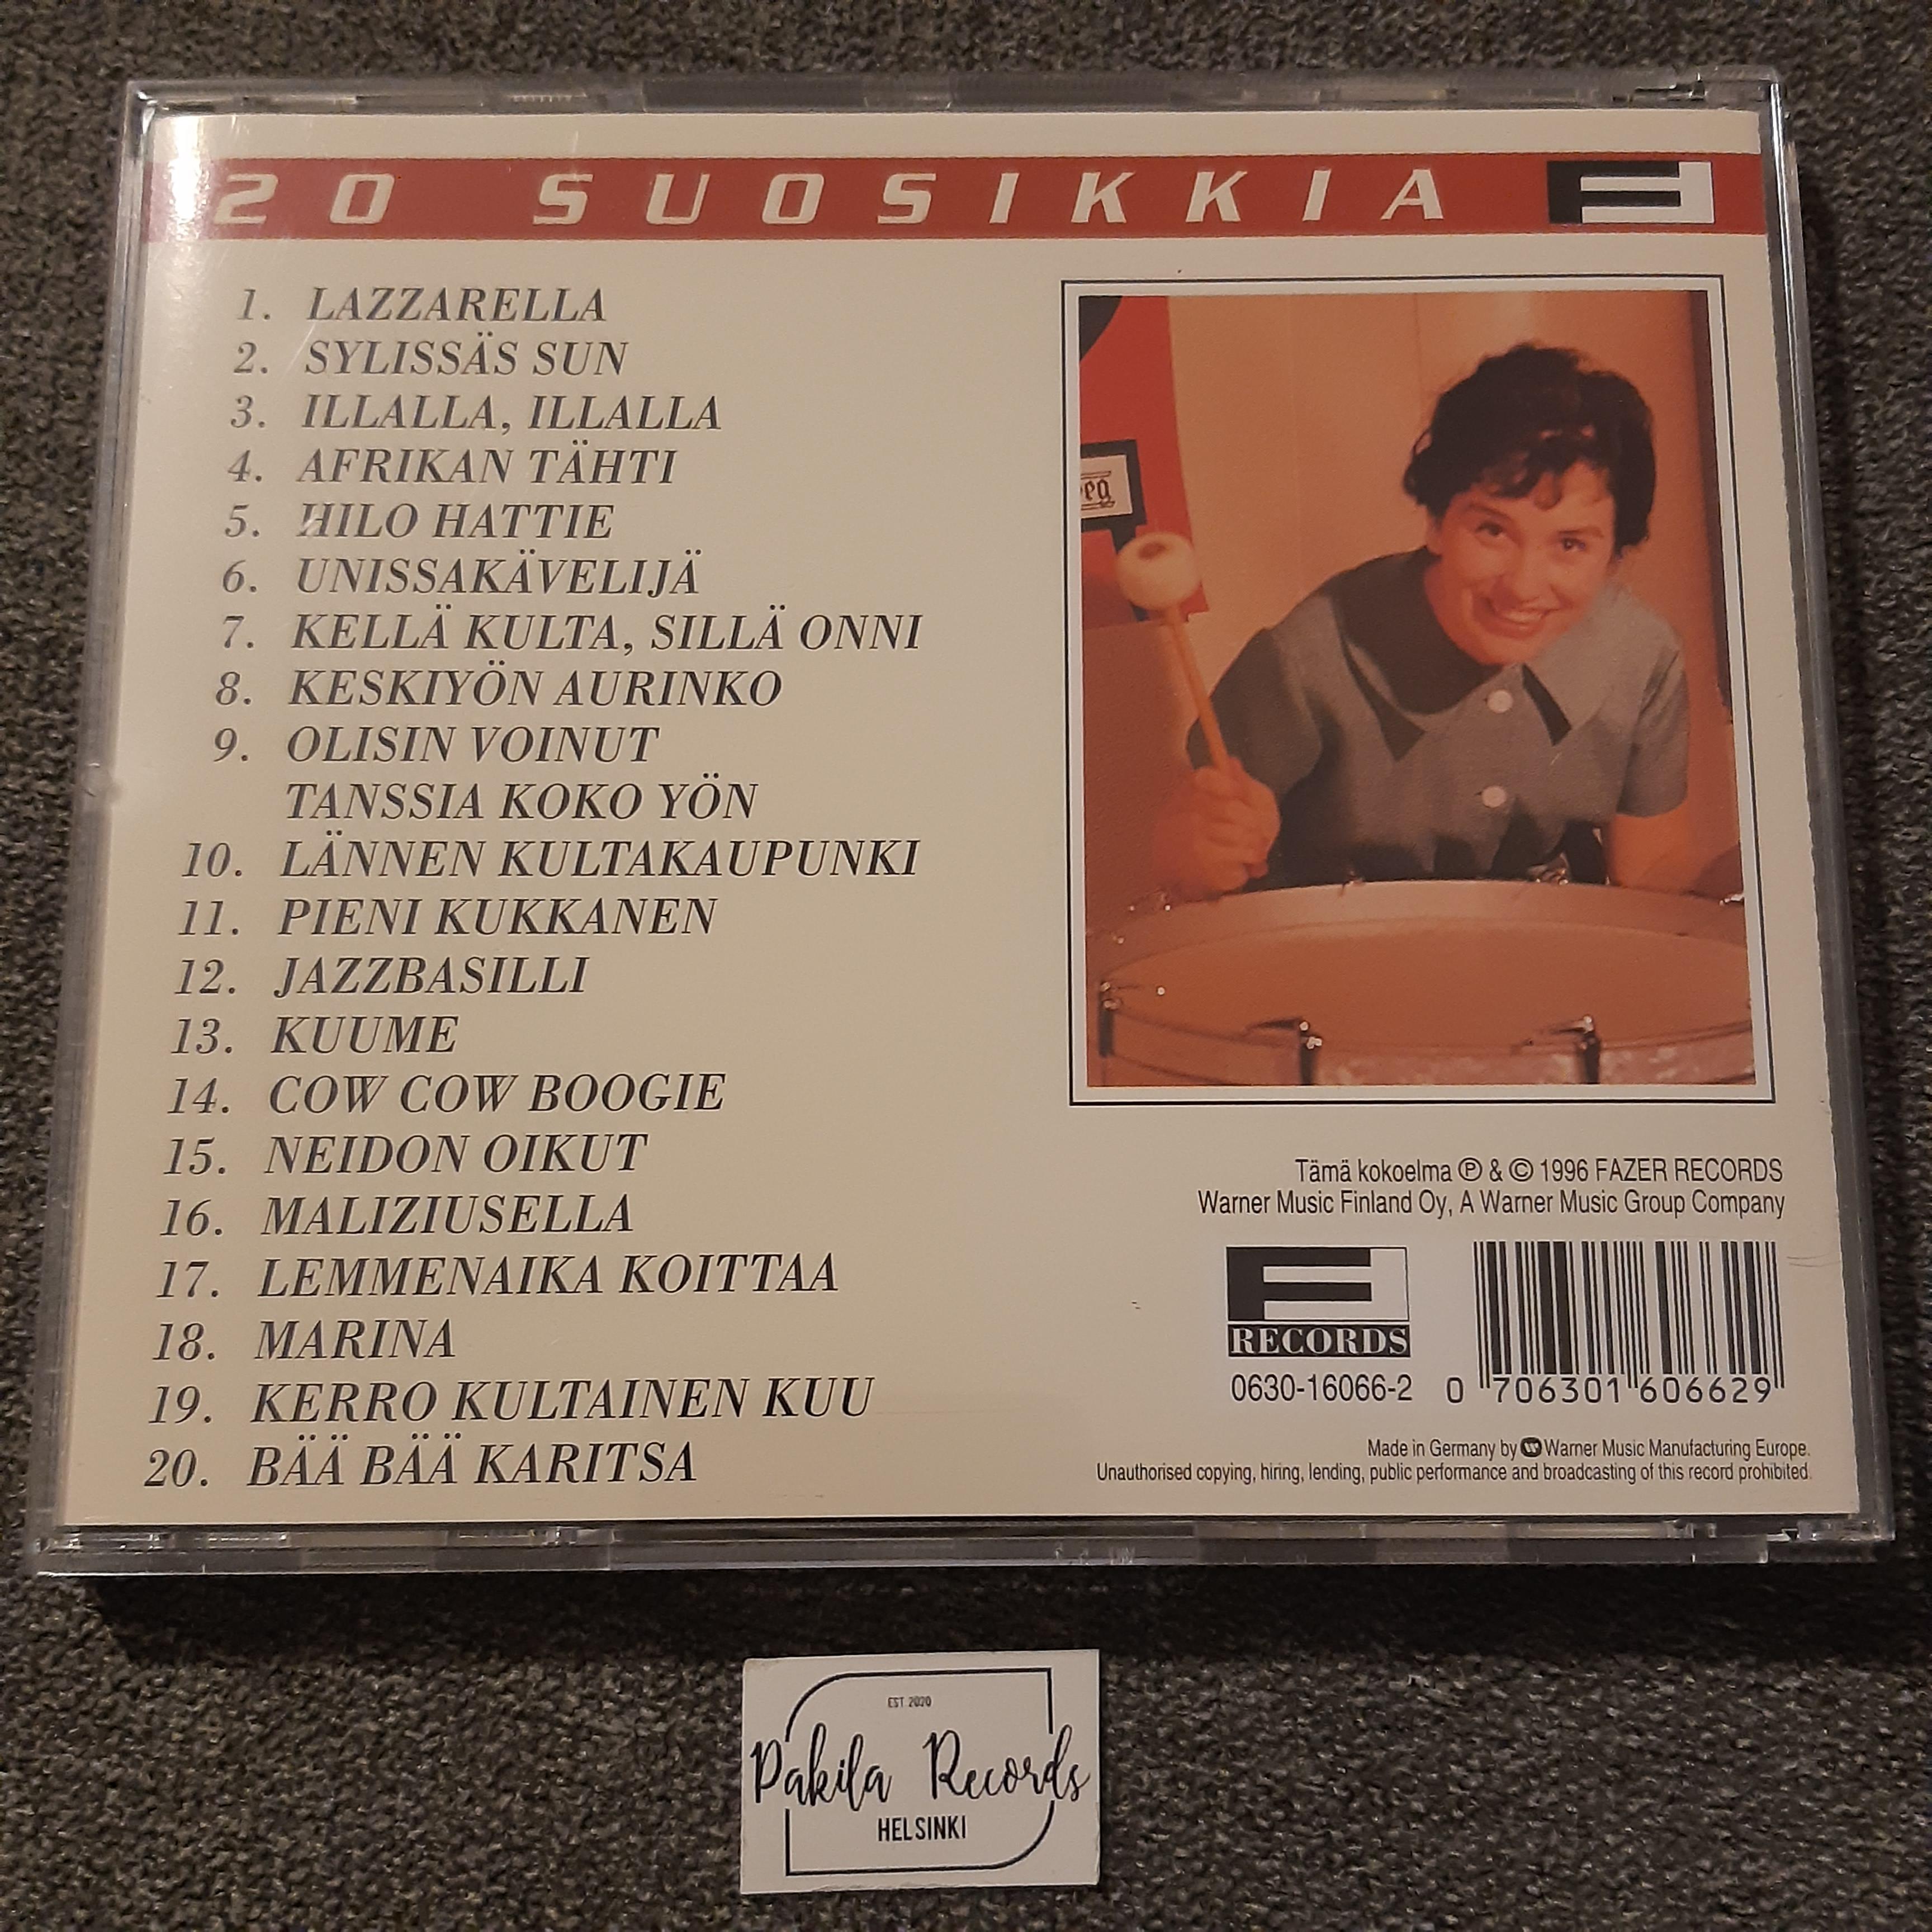 Laila Kinnunen - Lazzarella, 20 suosikkia - CD (käytetty)